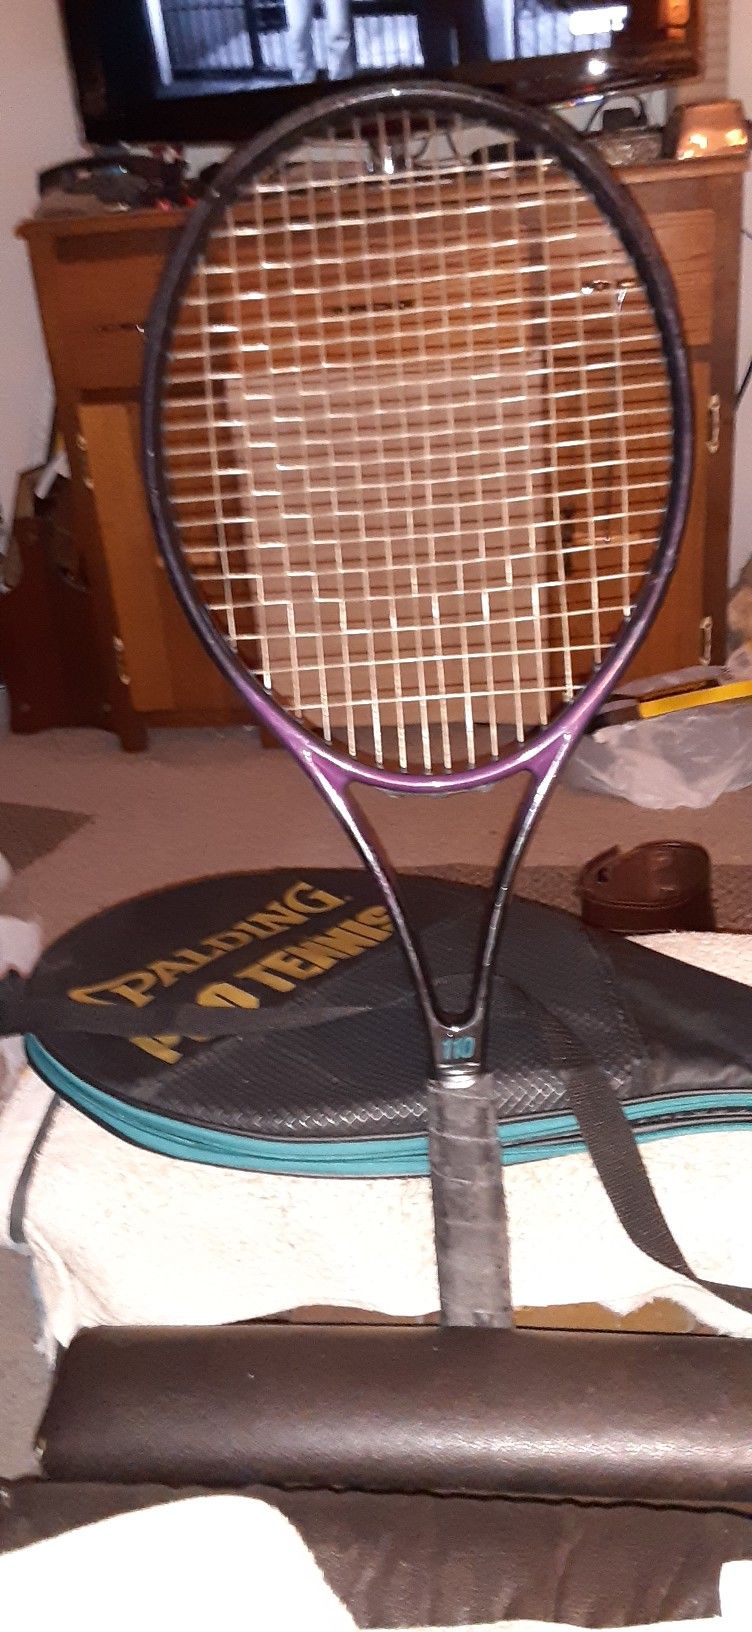 Spaulding Pro Forma 110 Tennis Racket 